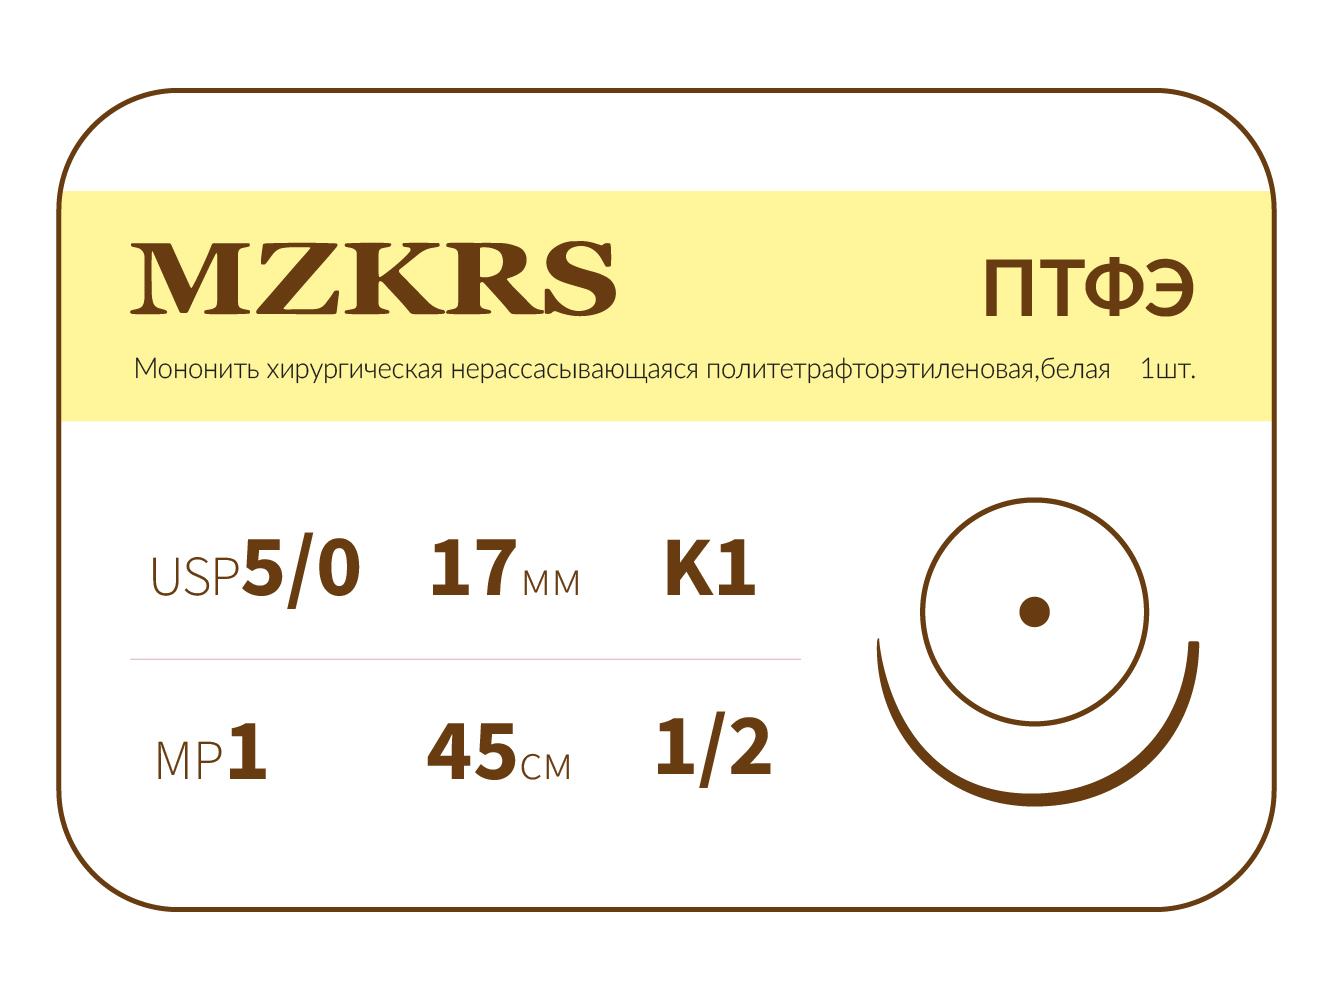 1712К-Premium 5/0 (1) 45 ПТФЭ хирургическая нить политетрафторэтиленовая, MZKRS (Россия)